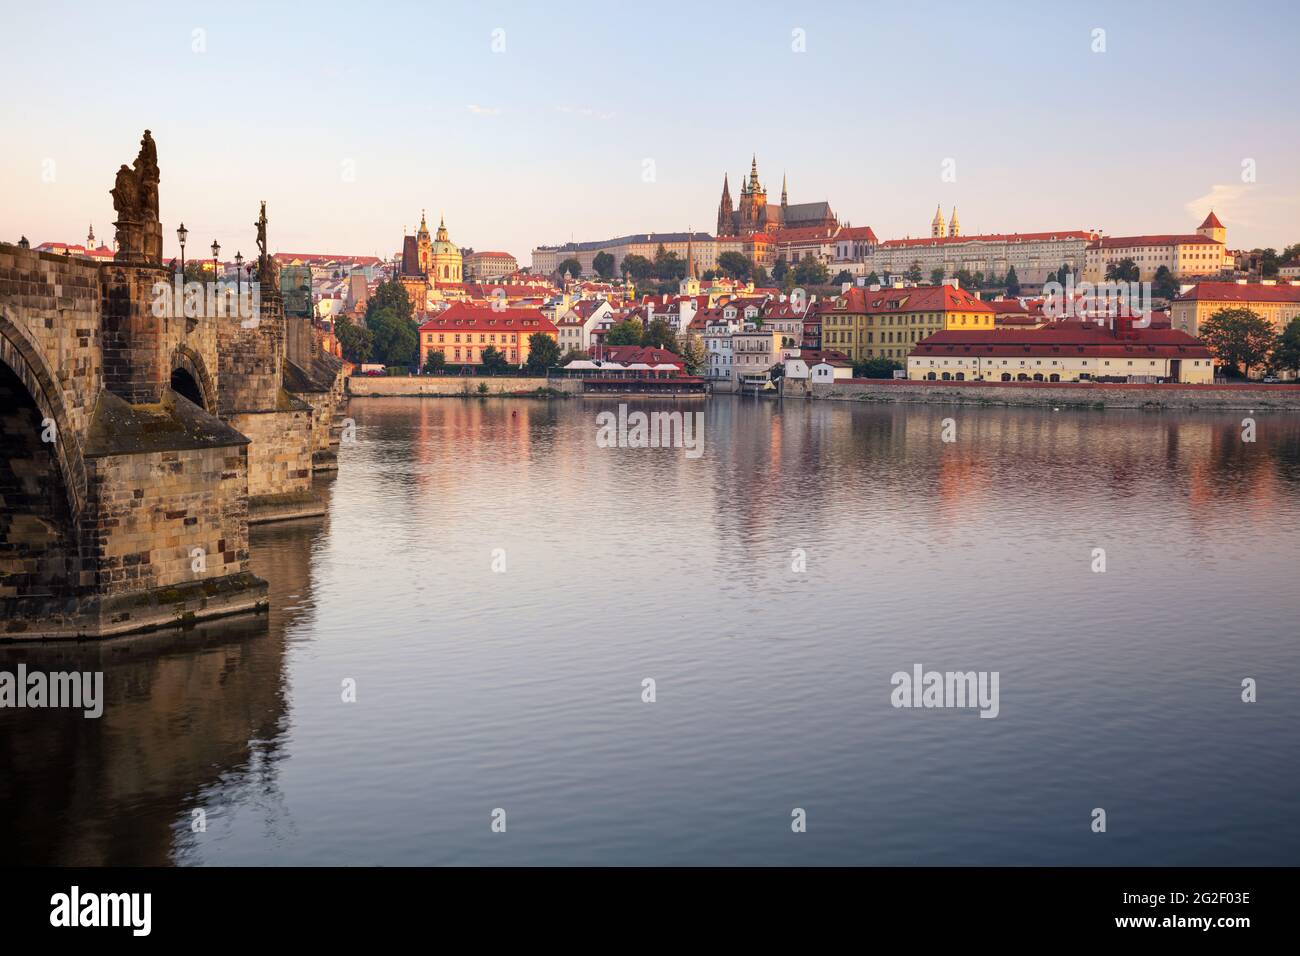 Prague au lever du soleil. Image du paysage urbain de Prague, capitale de la République tchèque, avec la cathédrale Saint-Vitus et le pont Charles au lever du soleil. Banque D'Images